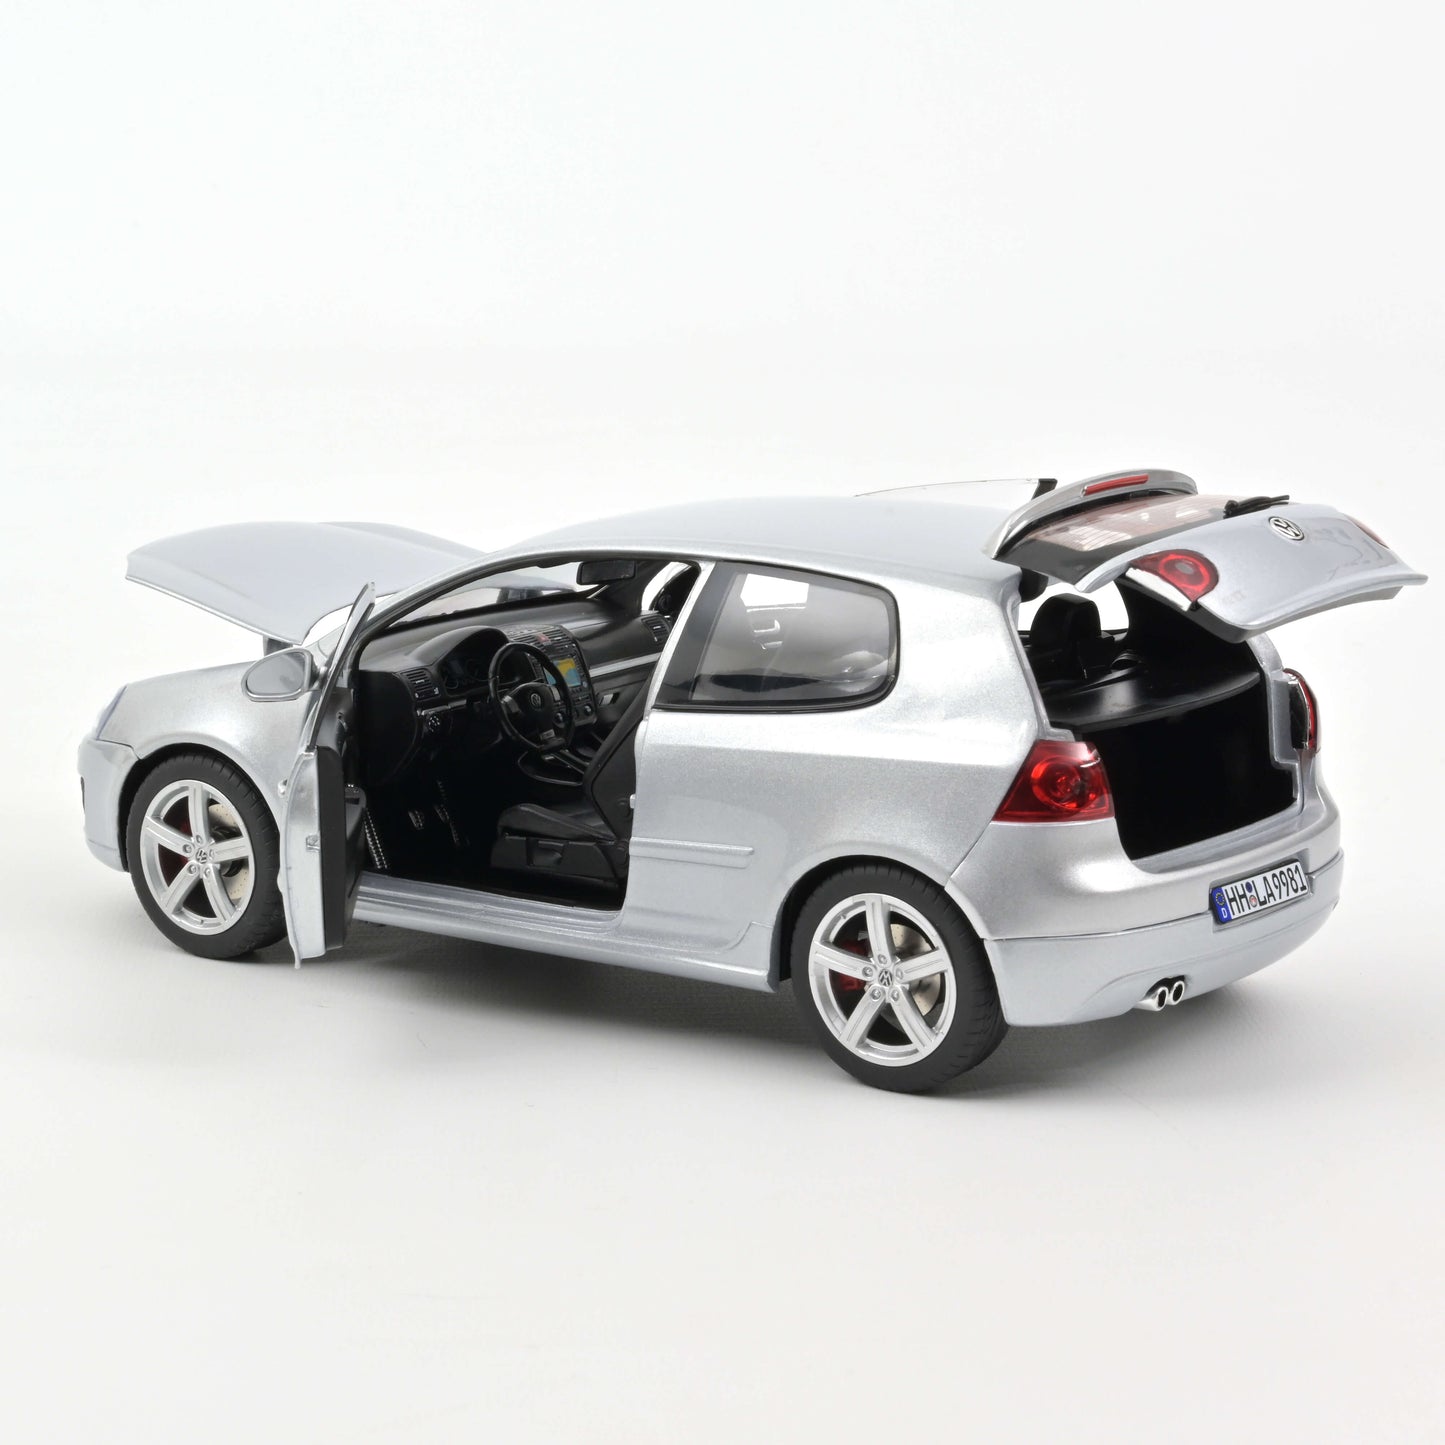 1:18 VW Golf GTI V Pirelli, 2007, sølvmetallic, Norev 188425, åben model